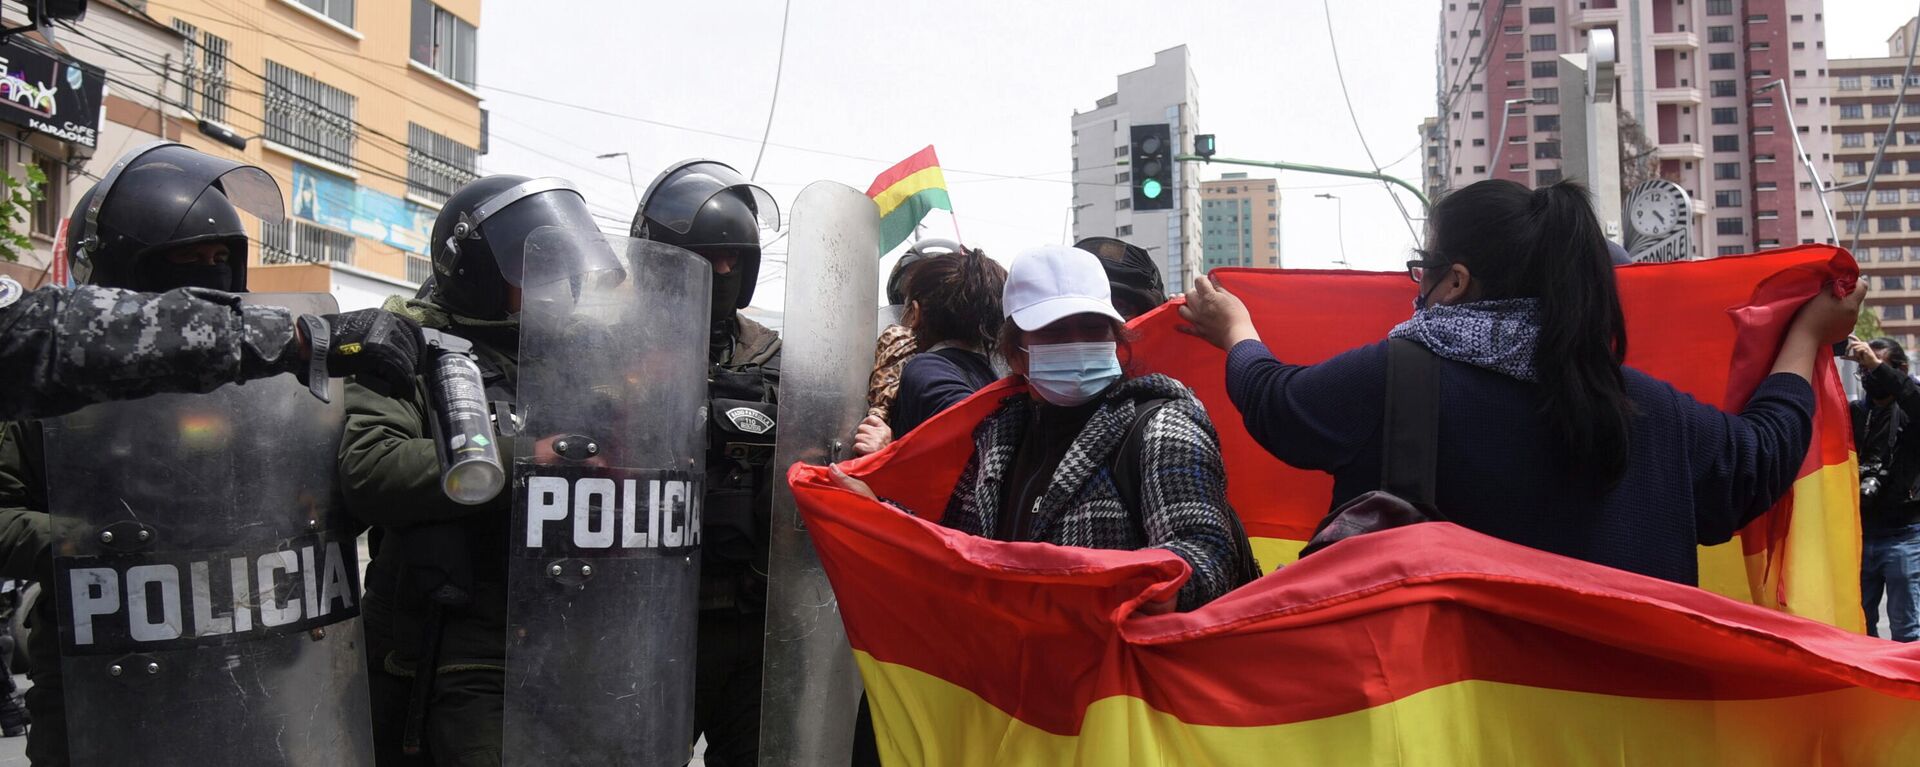 Protestas en Bolivia - Sputnik Mundo, 1920, 18.10.2021